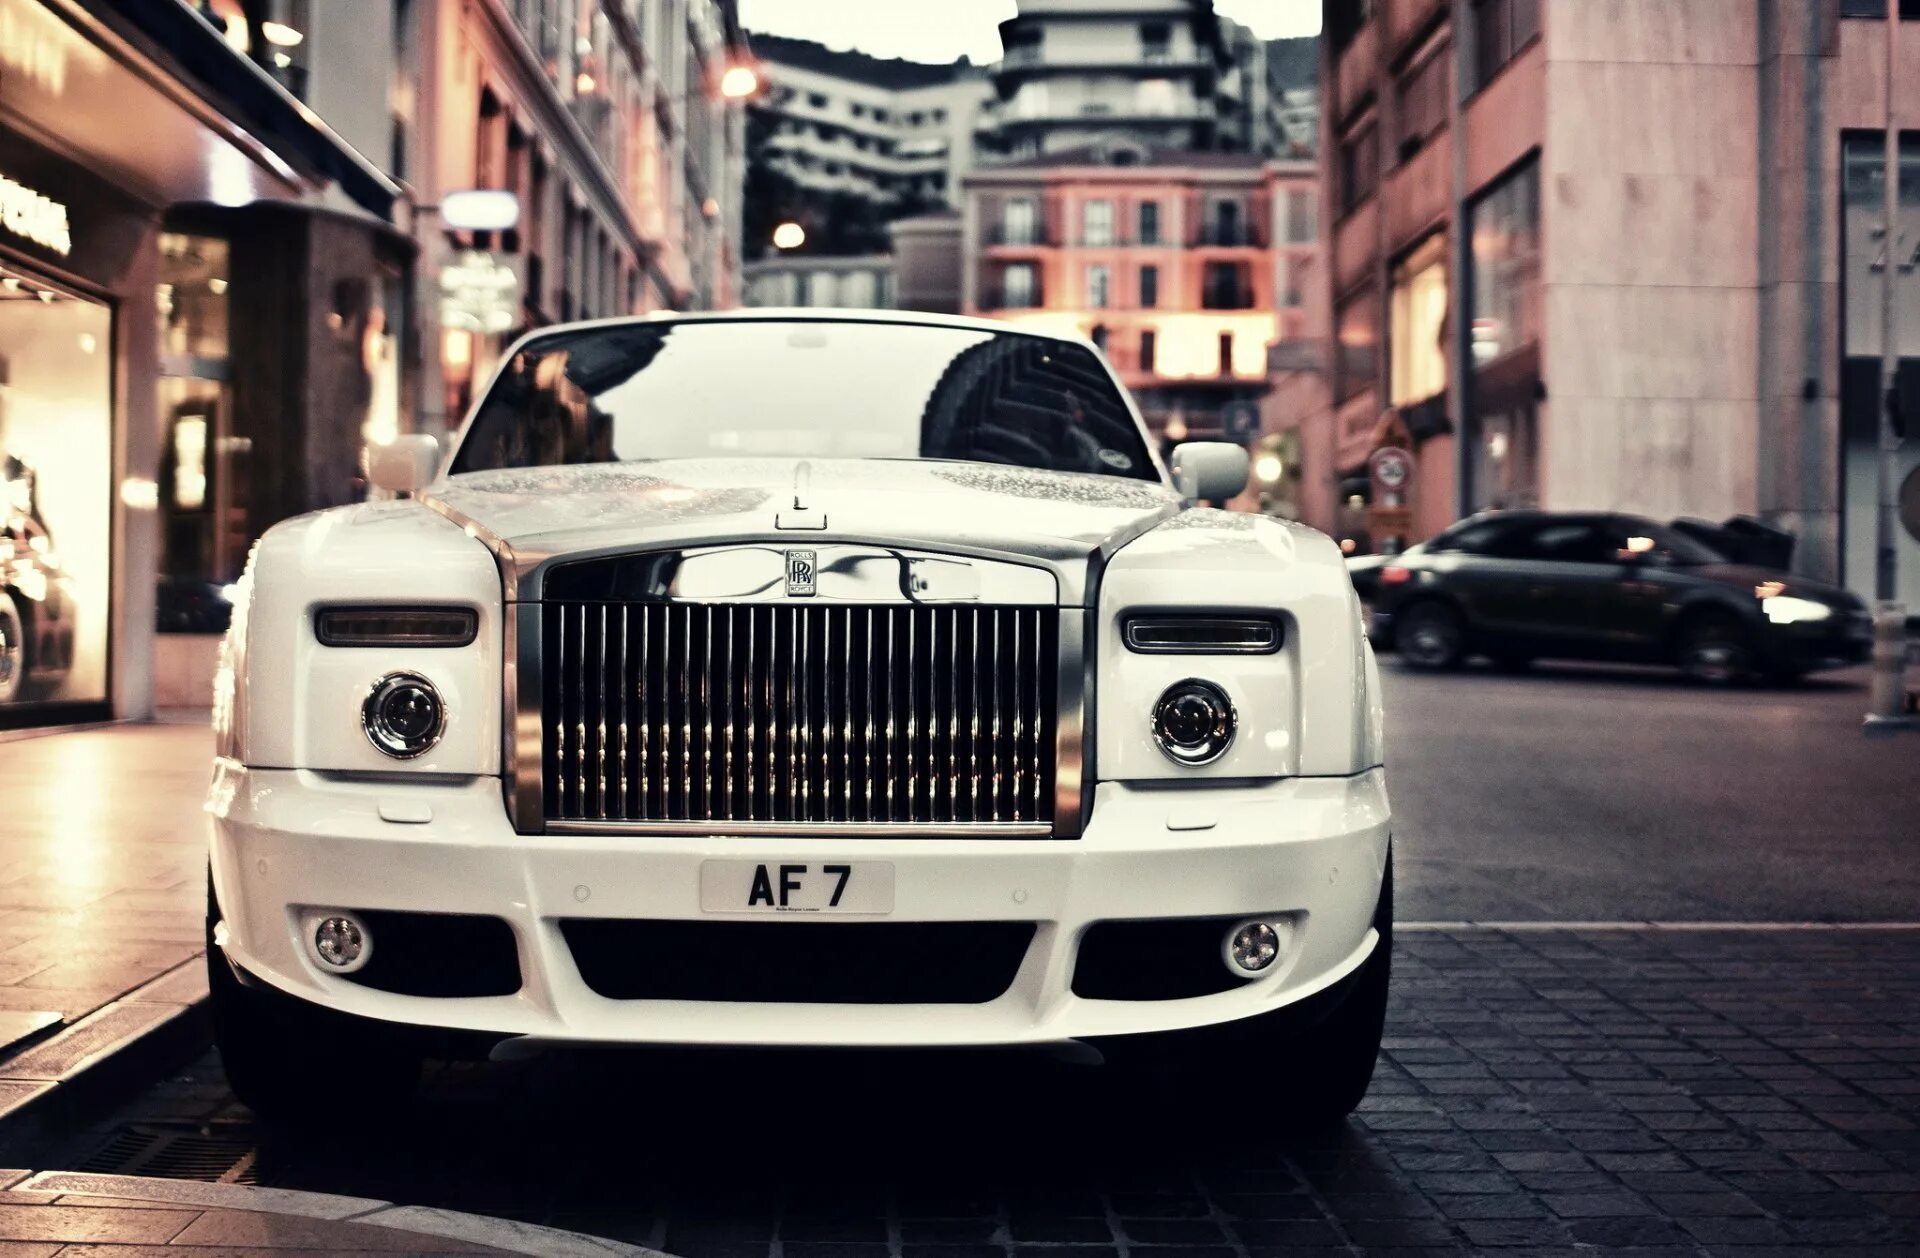 Роллс Ройс Luxury. Rolls Royce Phantom. Rolls Royce Phantom Mansory. Роллс Ройс 1920. Найками роллс